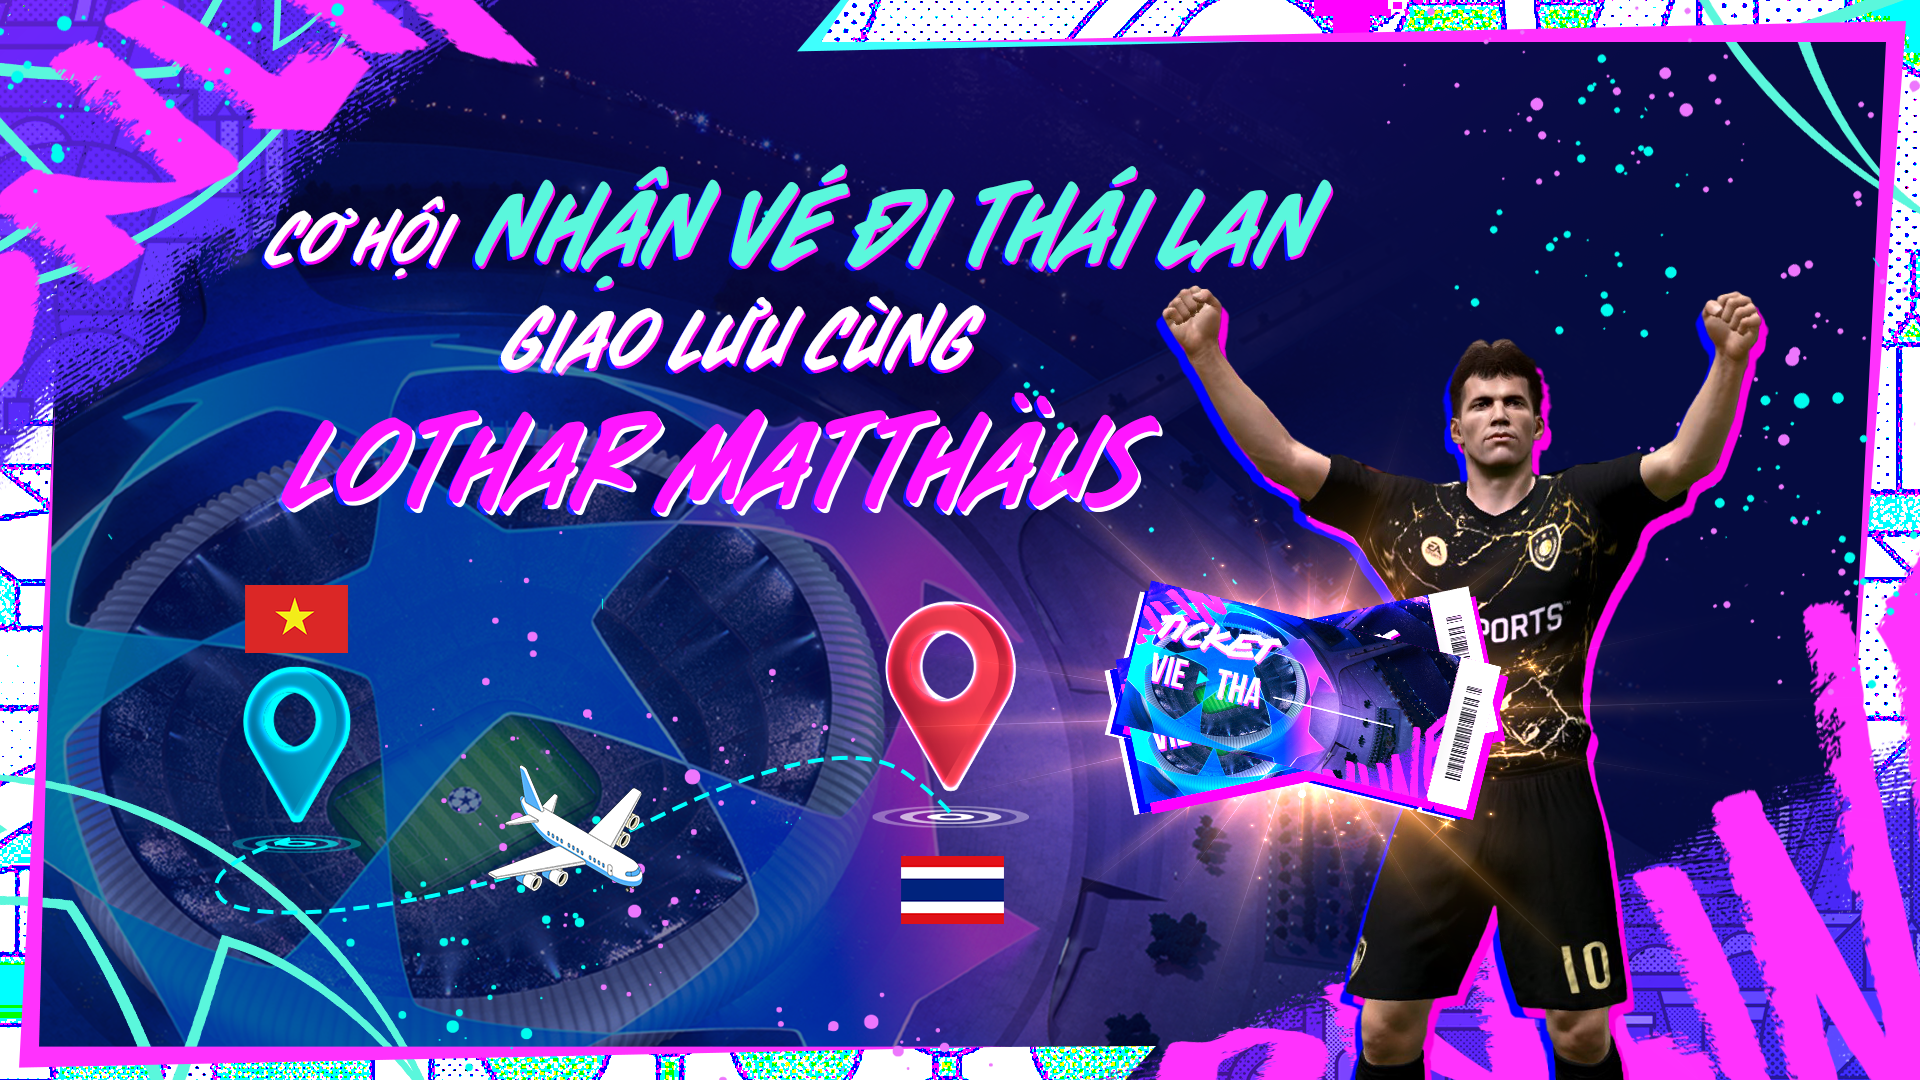 FC Online “chơi lớn” khi tặng vé đi Thái Lan giao lưu cùng cựu danh thủ Lothar Matthäus cho người chơi sự kiện miễn phí - ảnh 3